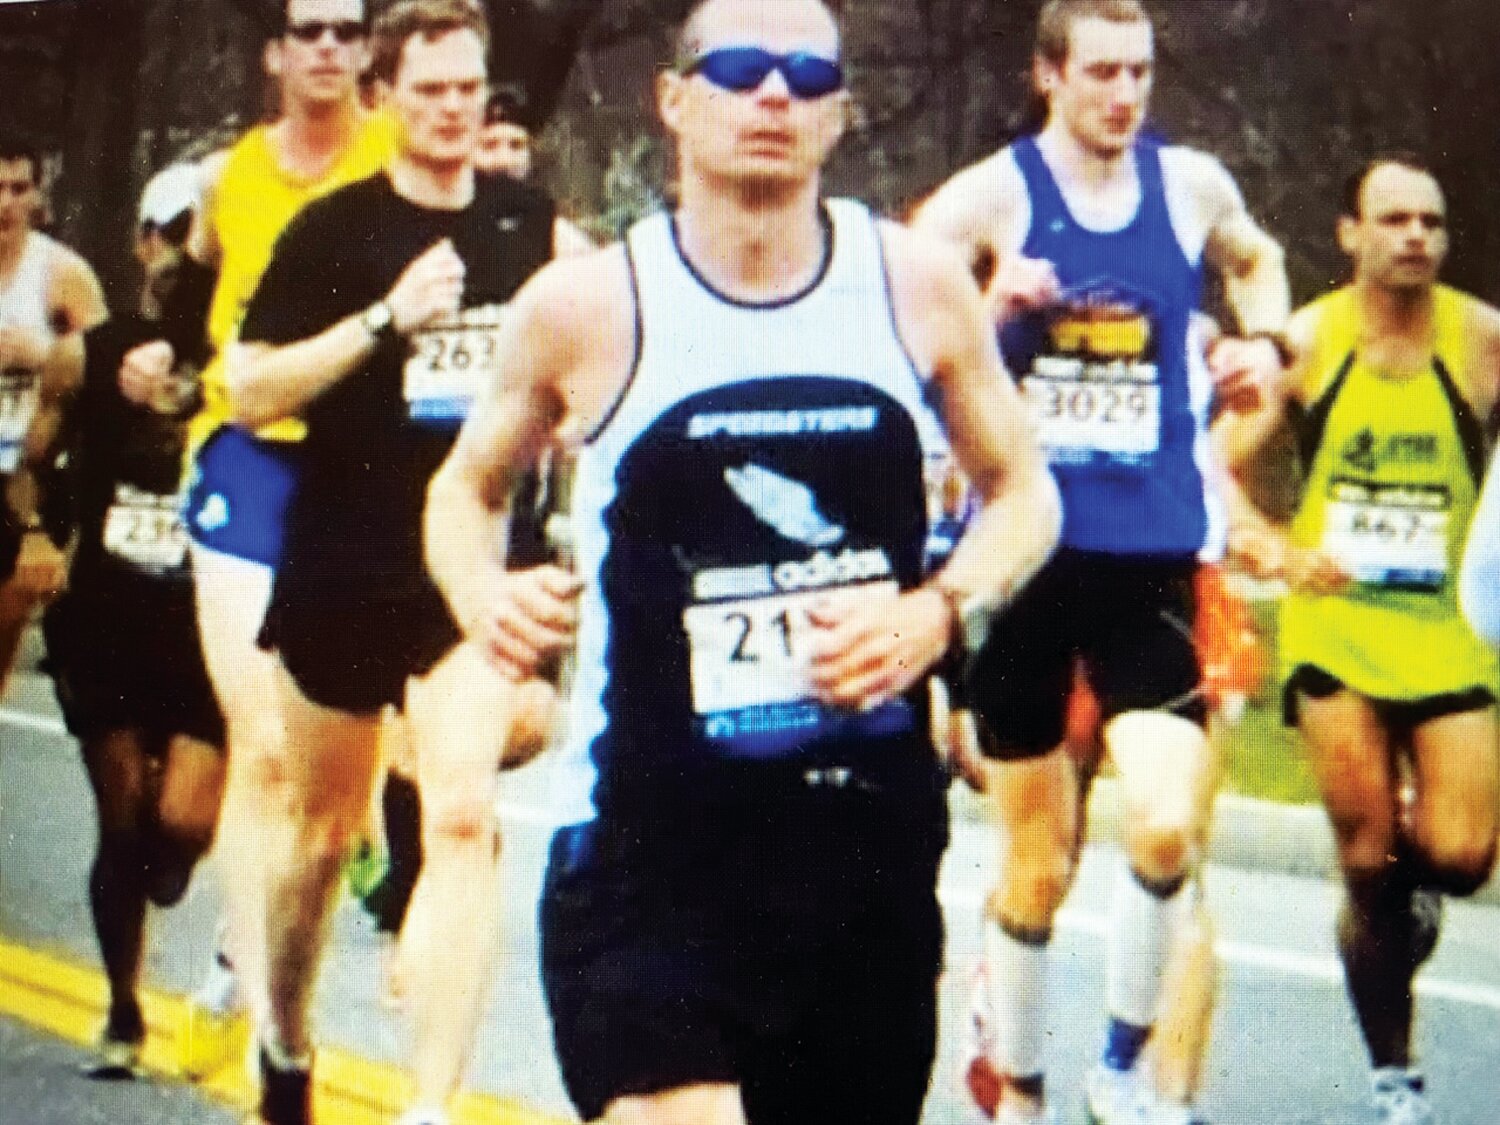 Peter Lederer of Langhorne competes in the 2019 Boston Marathon.